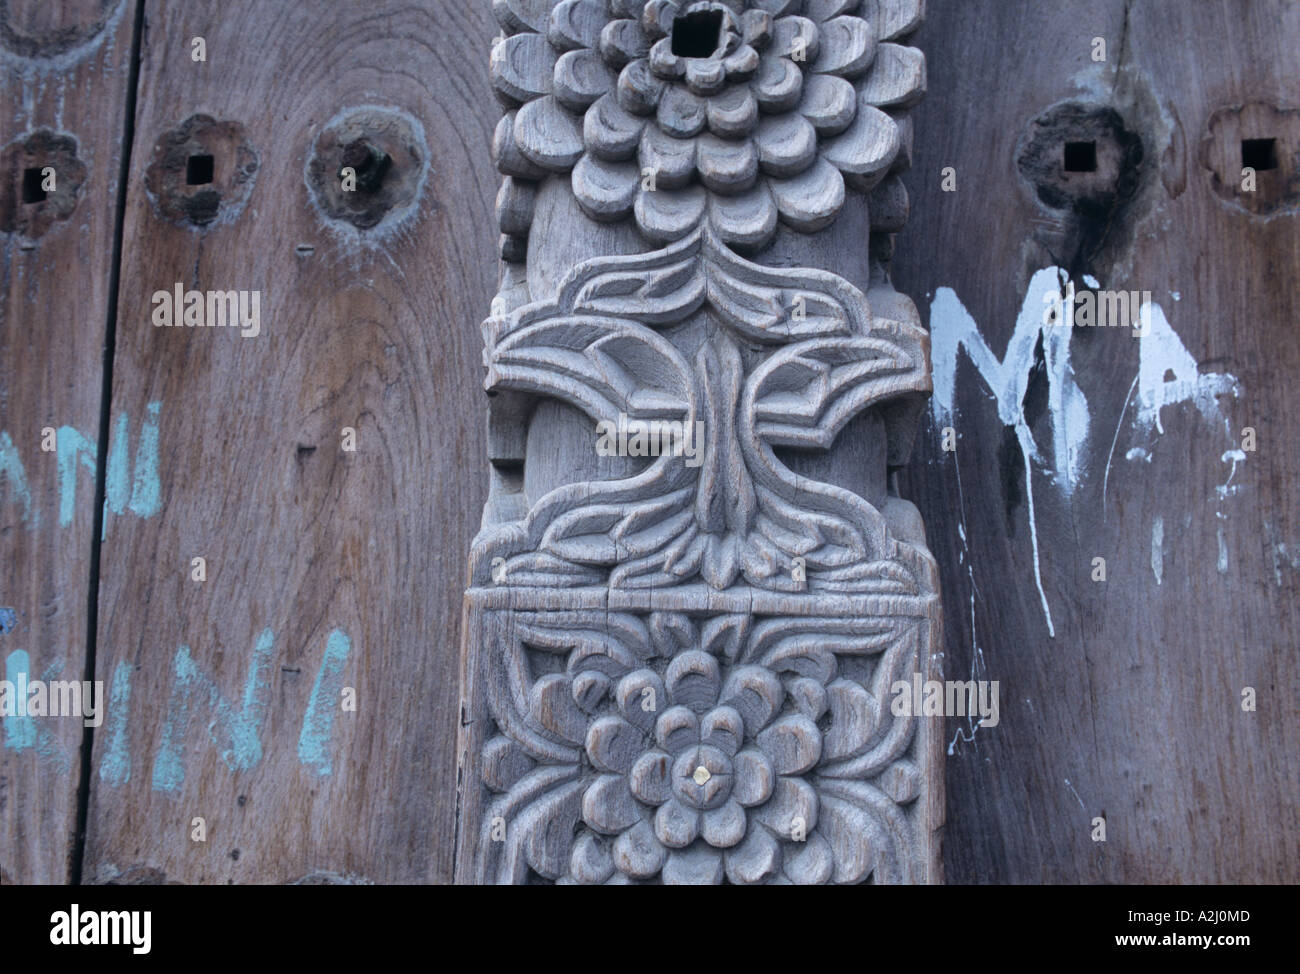 Enormes puertas talladas de madera de teca y con clavos de bronce, son una característica (no siempre bien mantenido) de África Oriental de la costa árabe Foto de stock